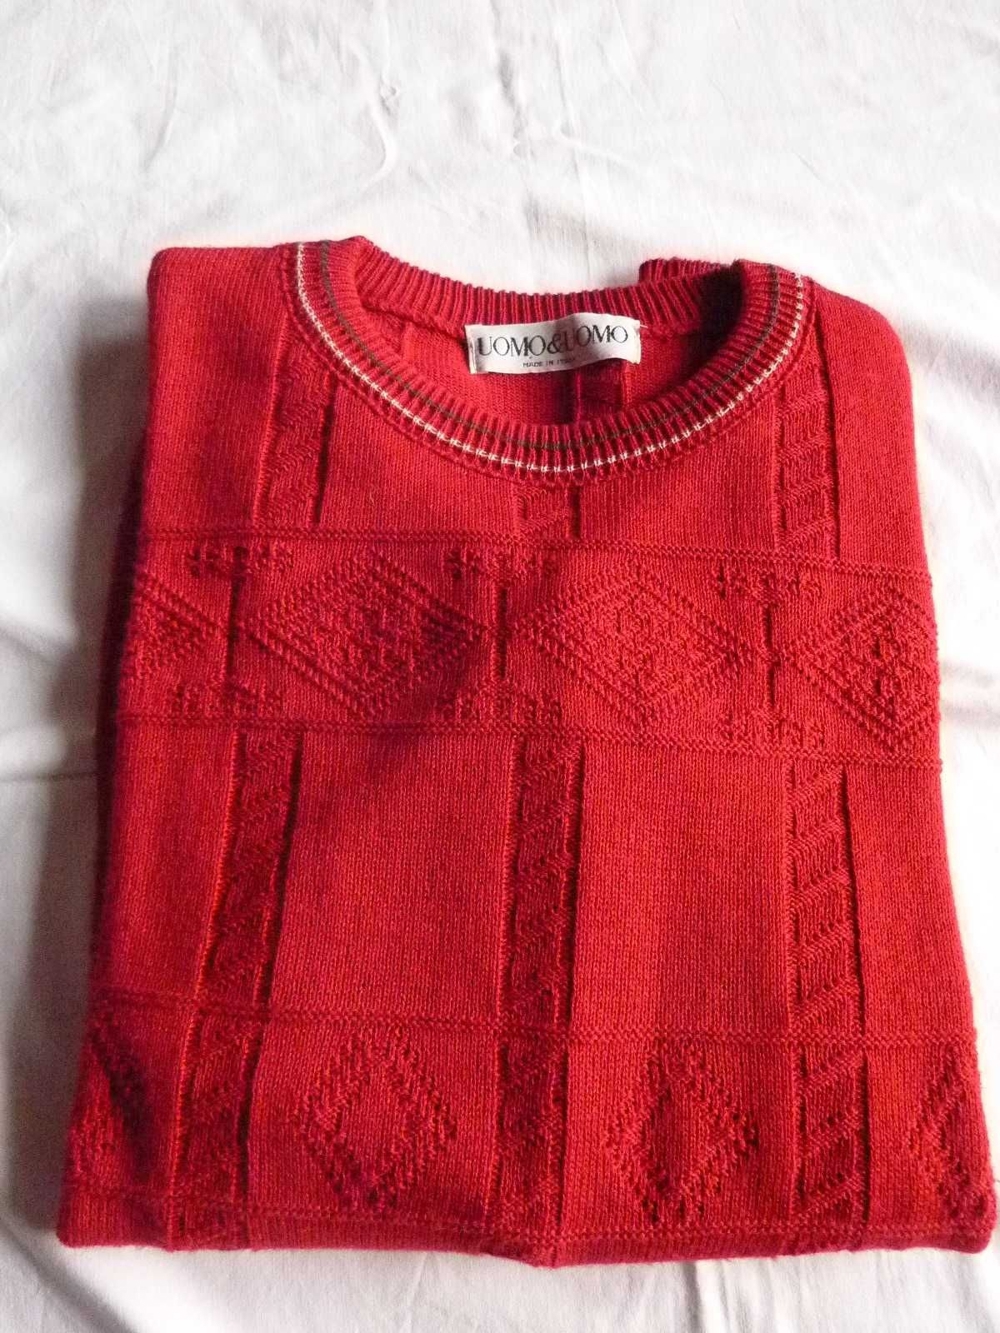 Leichter Herren-Strick-Pullover, rot, wie neu, Gr. 54   XL